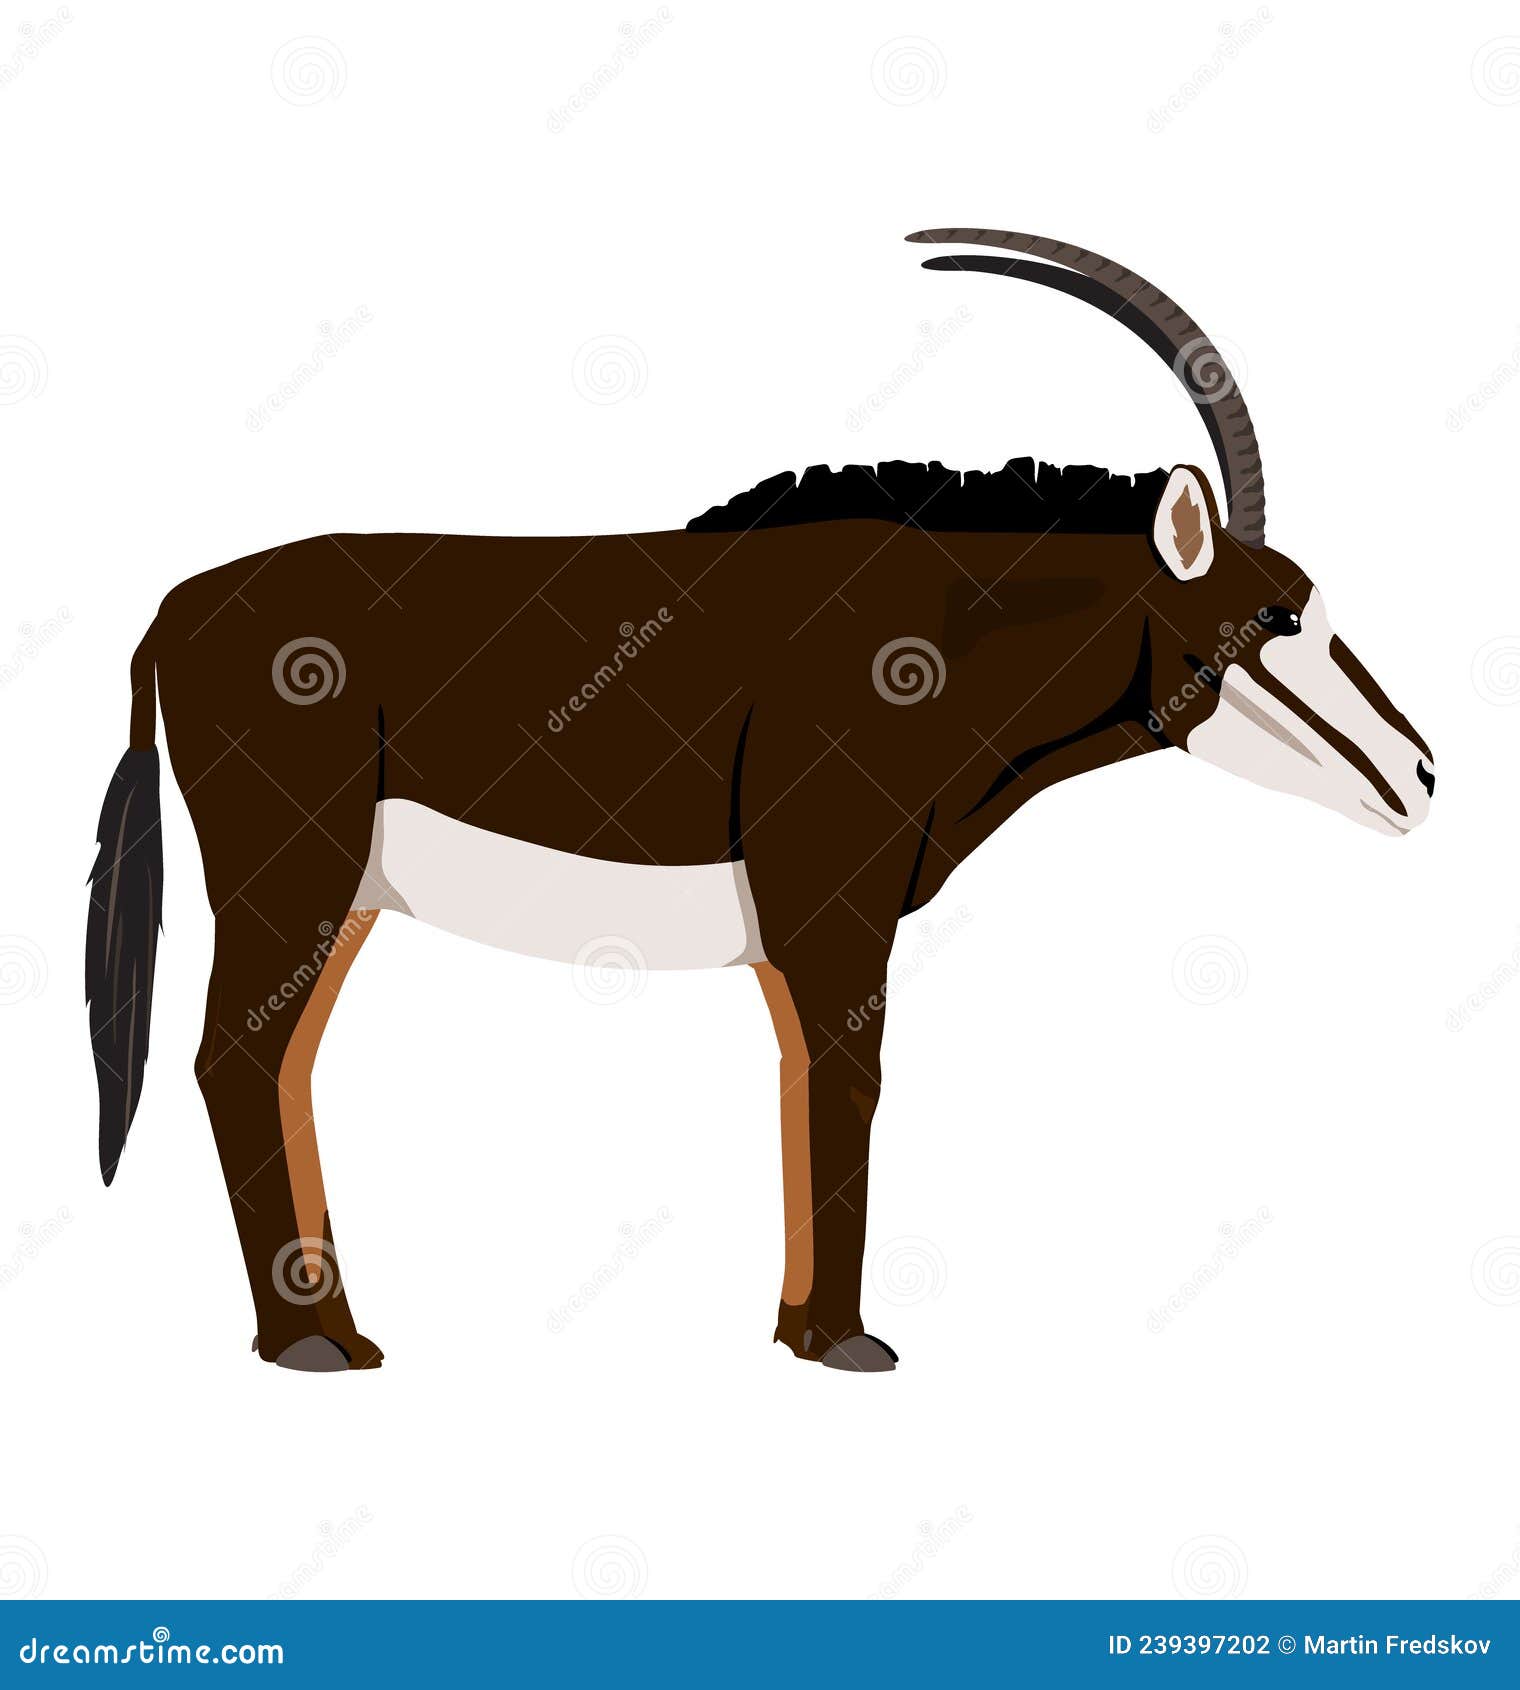 Hippotragus niger sable antelope mężczyzna widok z boku płaski. Antylopa samca, widoczna w widoku bocznym wektor płaski